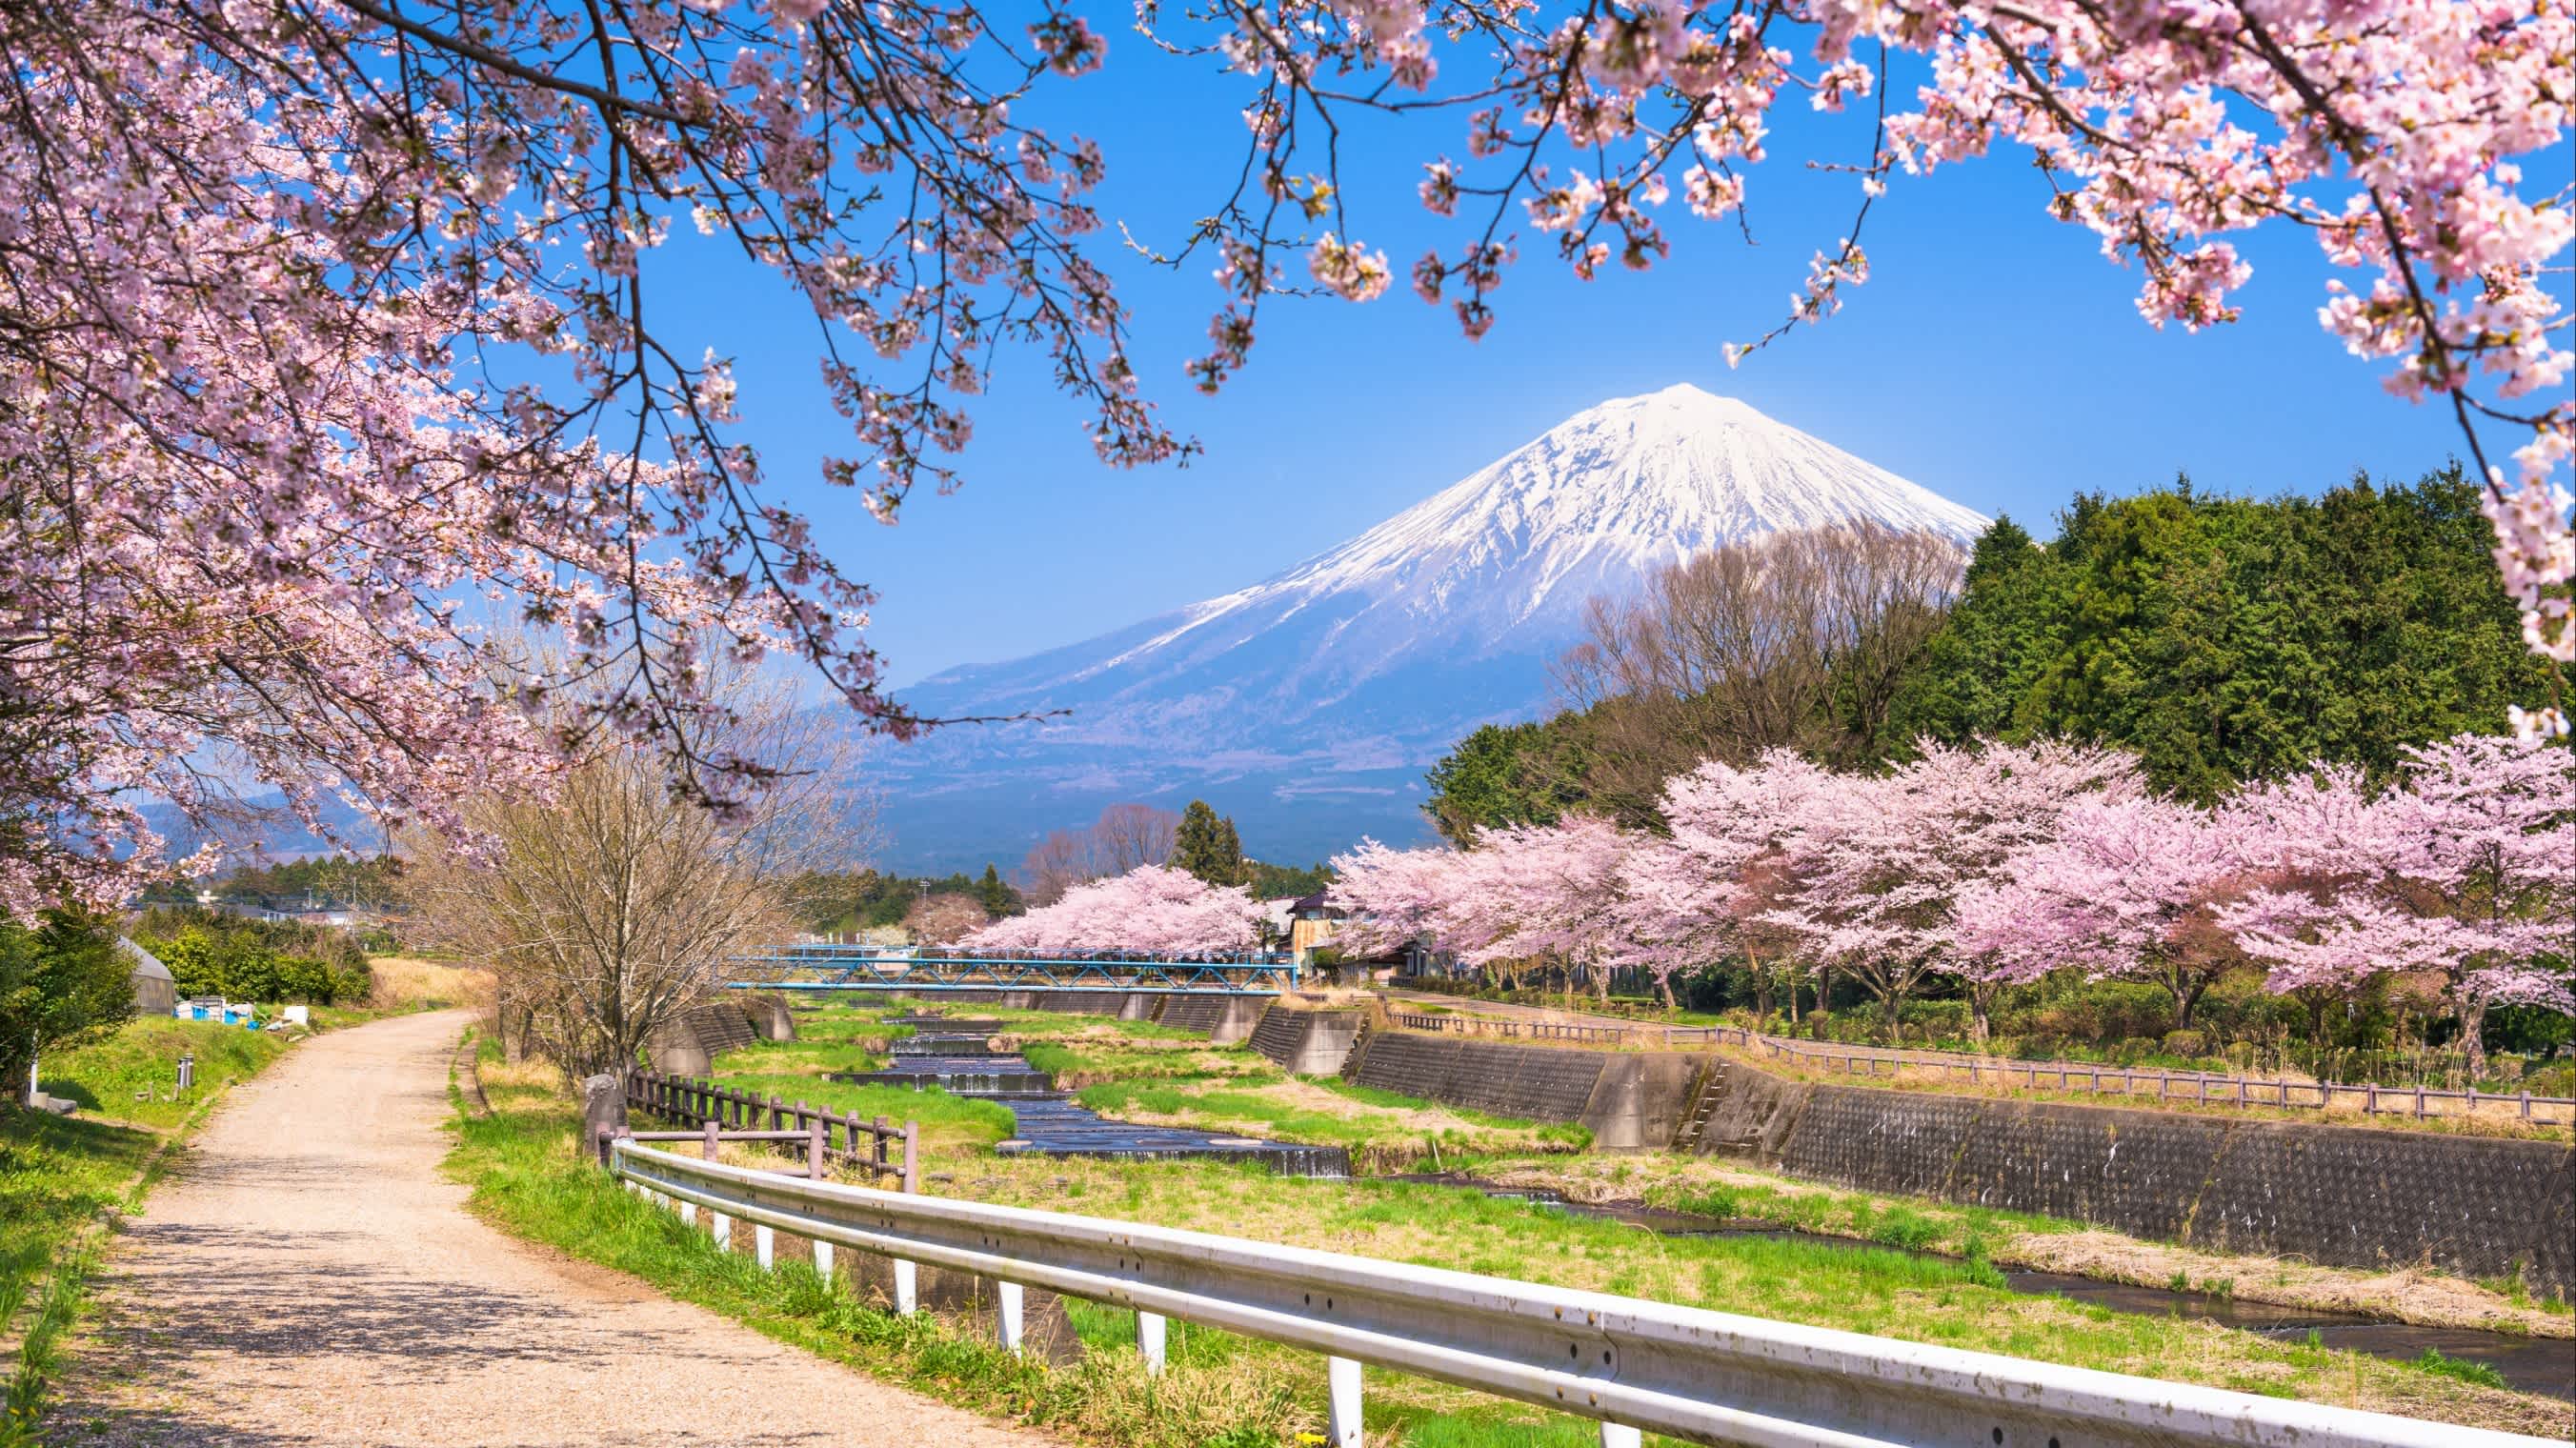 Blick auf den Mount Fuji in Japan bei der Kirschblüte